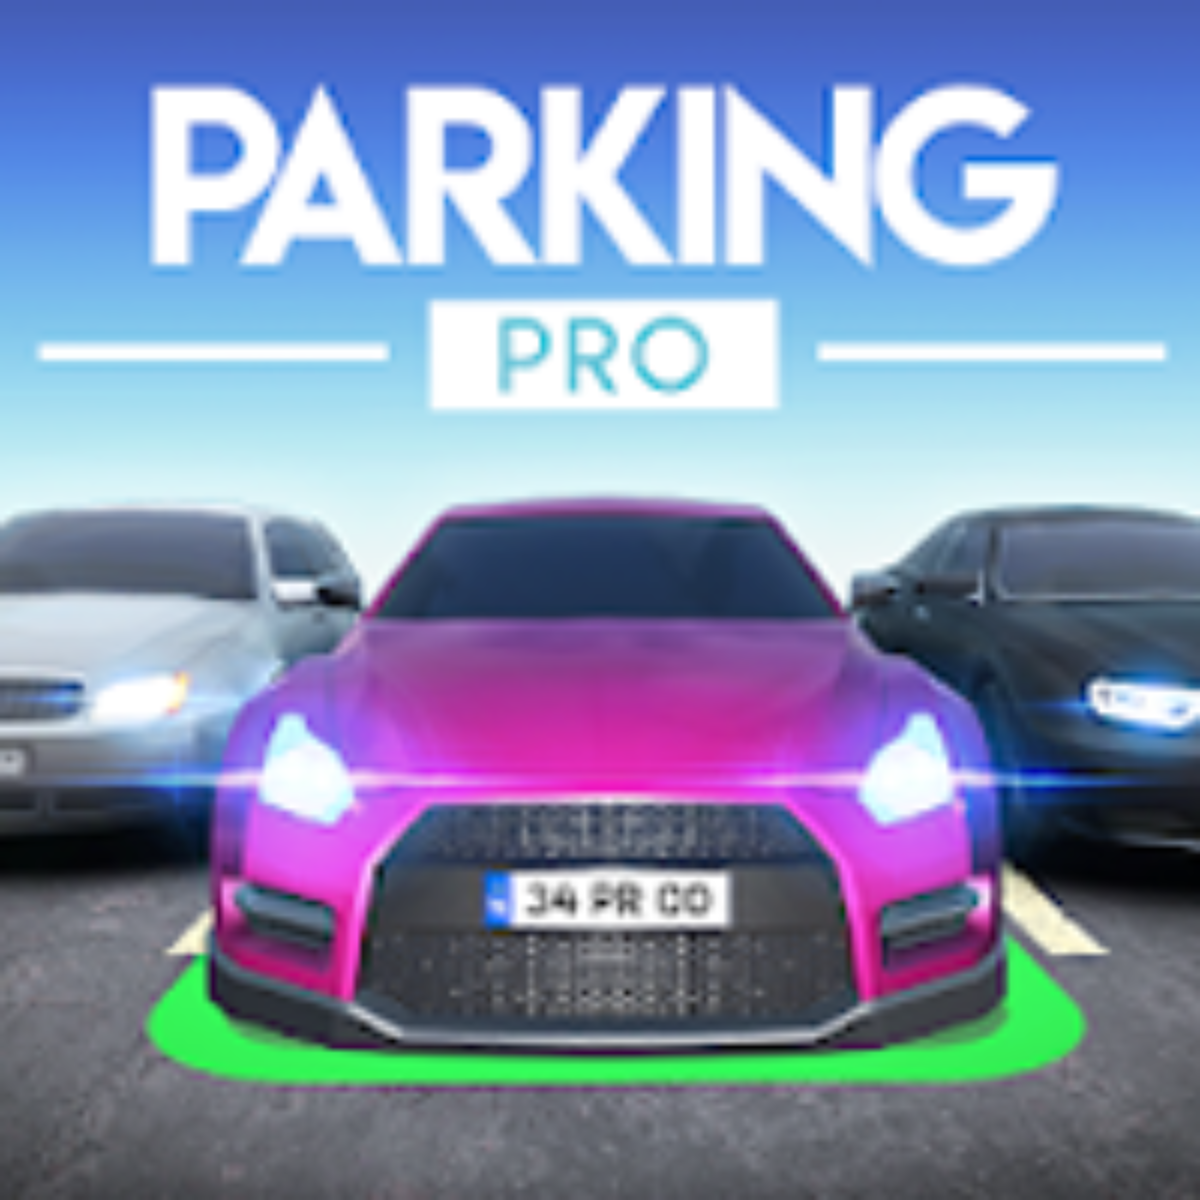 Car Parking Pro v0.3.4 Apk Mod - Dinheiro Infinito